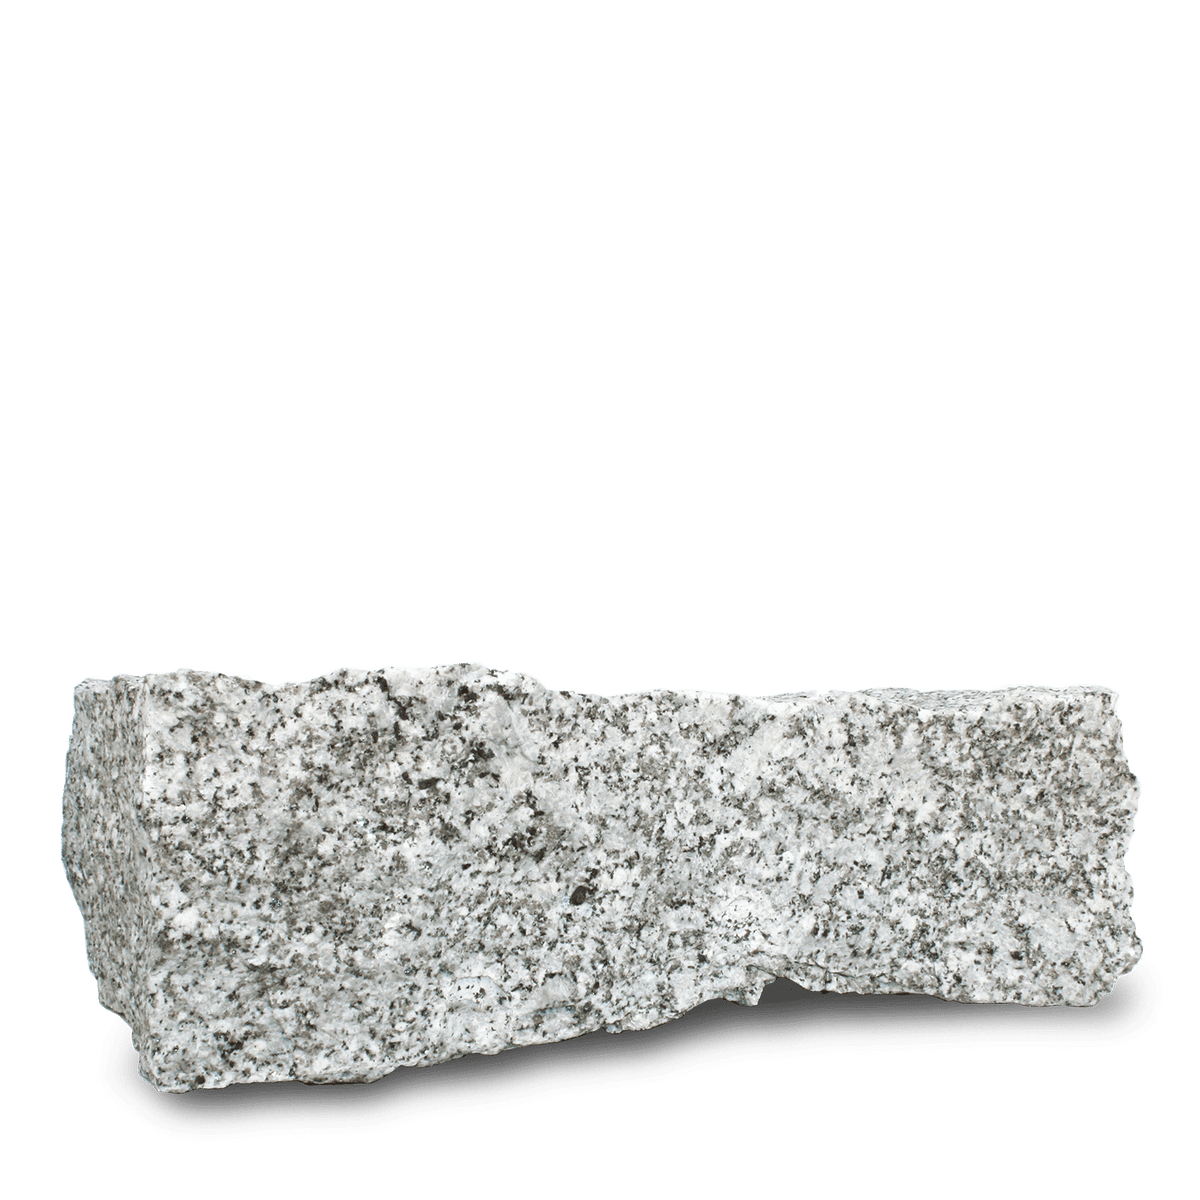 Galamio Granit Randsteine 40*20*10 » gebrochen « 1000kg Palette